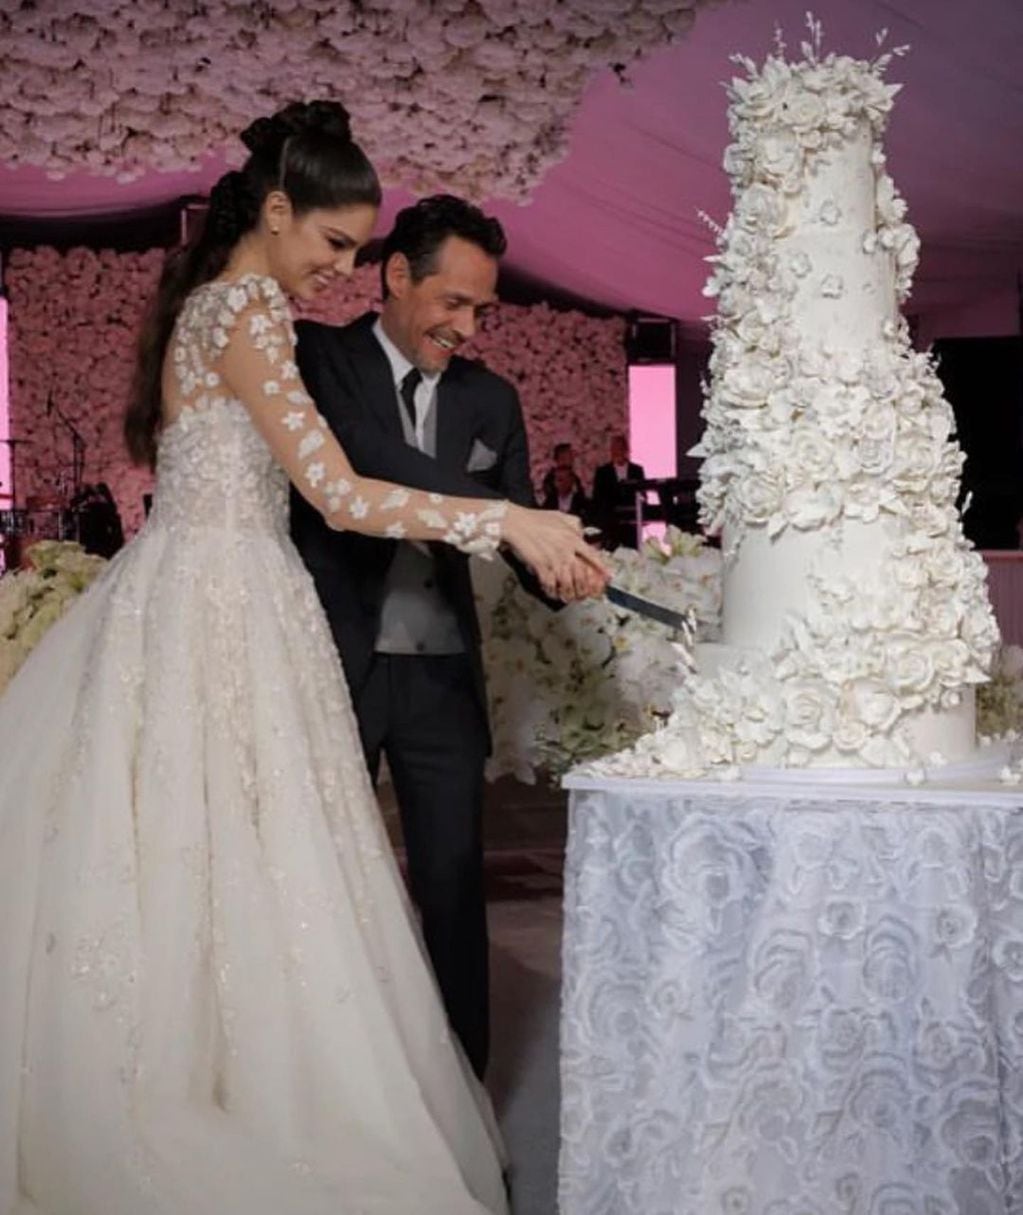 El impresionante pastel de bodas de Marc Anthony y Nadia Ferreira